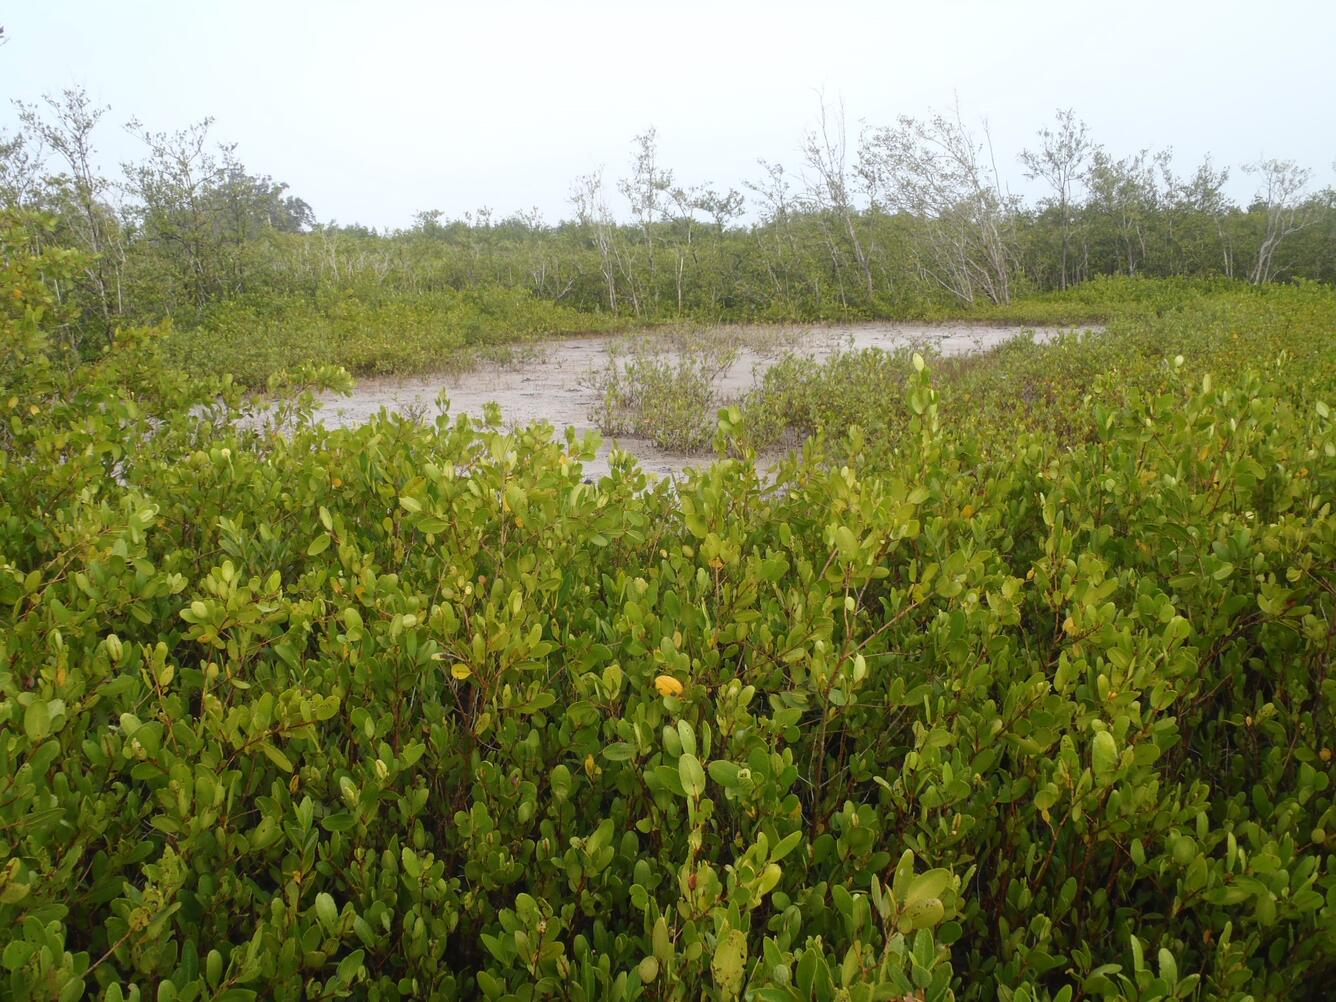 mangrove seedlings in tidal wetland